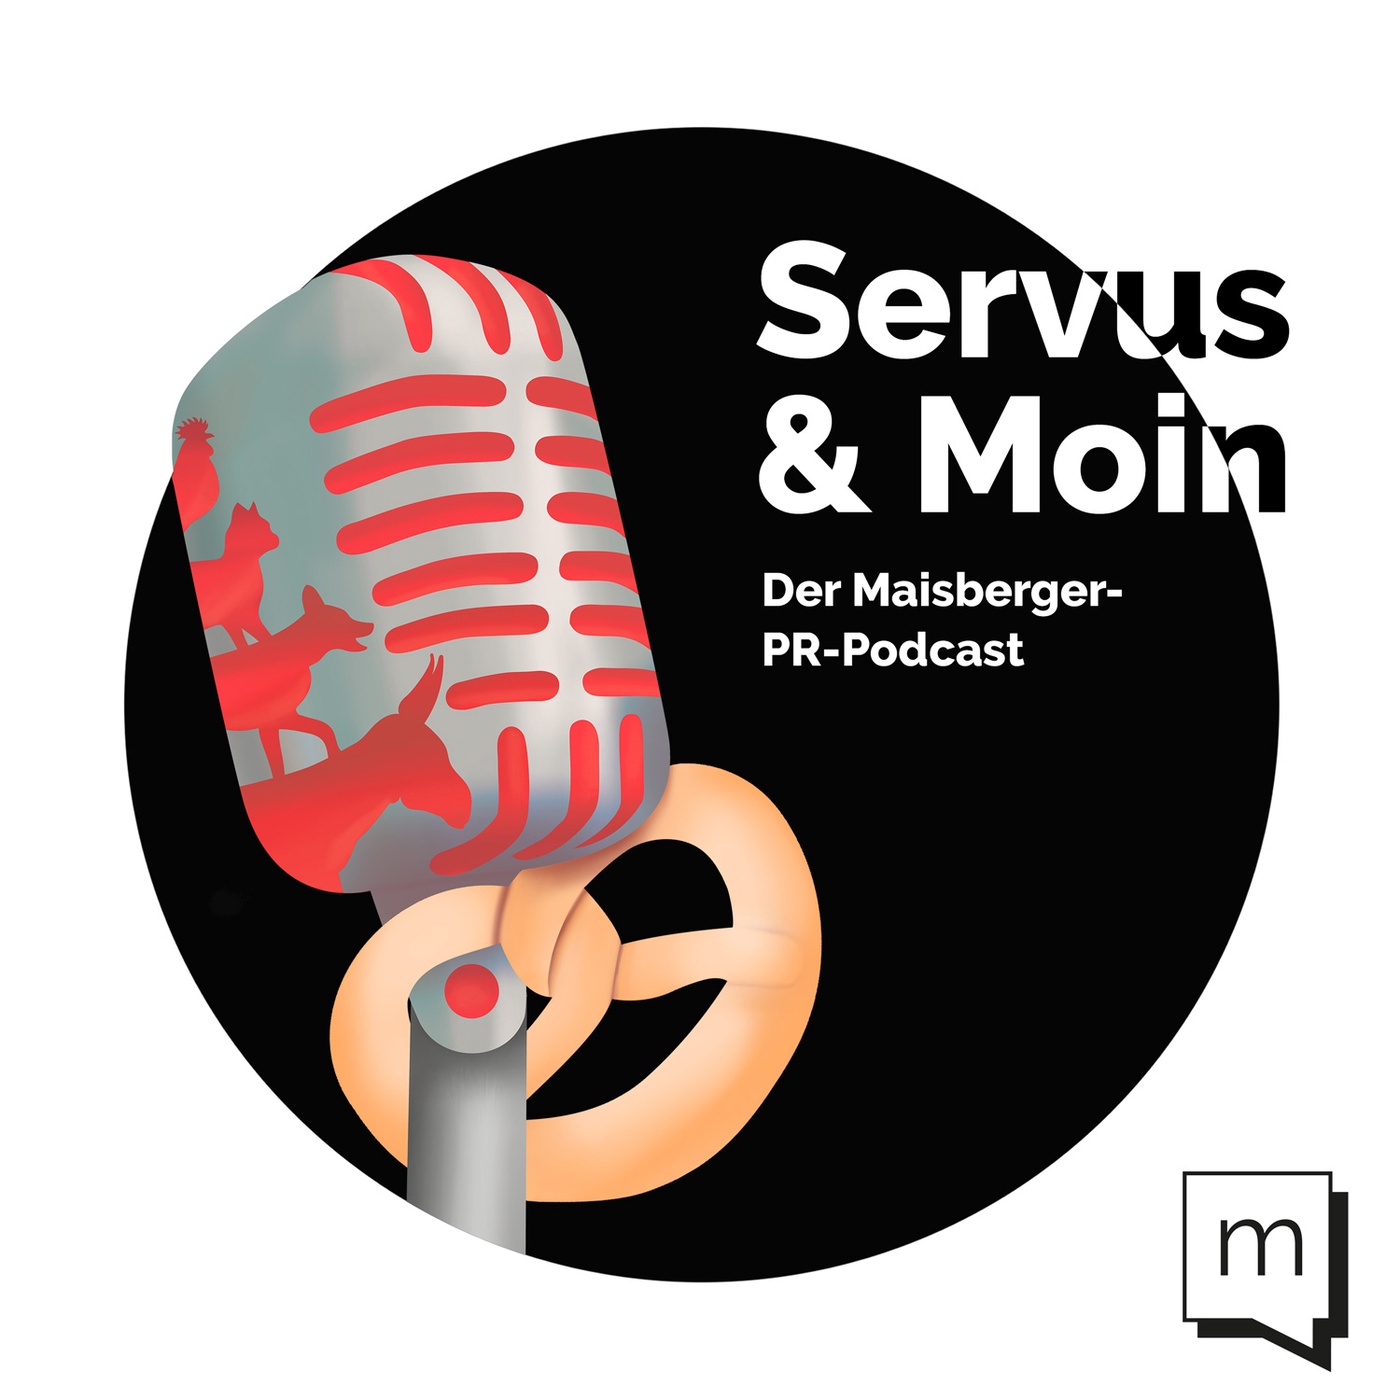 Servus & Moin - Der Maisberger-PR-Podcast